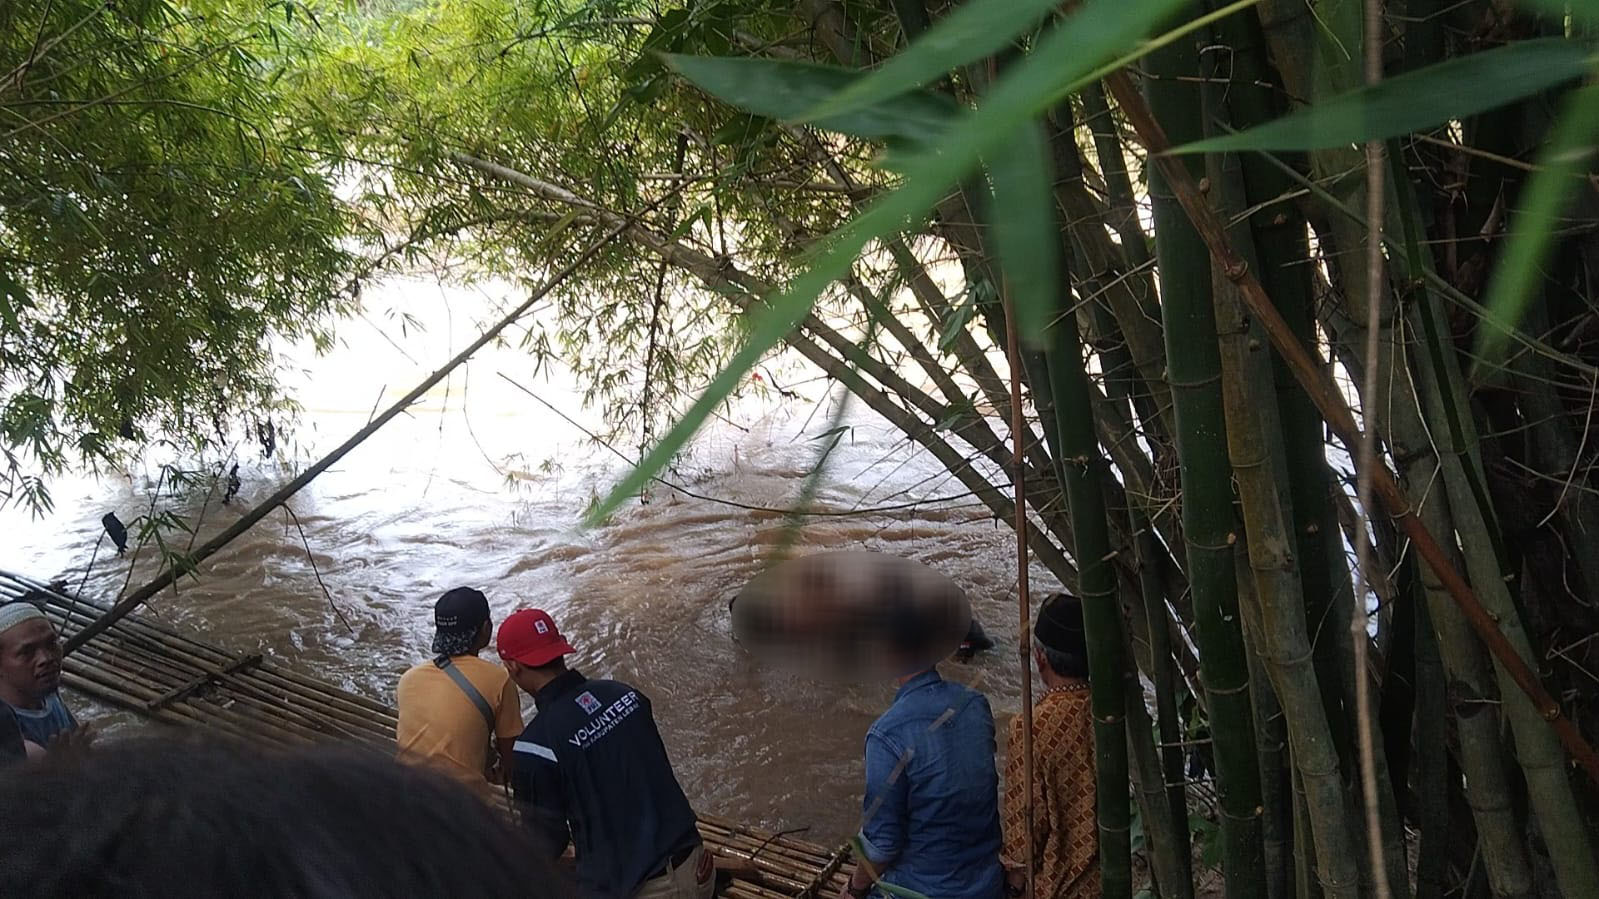 Oki, Warga Yang Hanyut di Sungai Ciujung, Akhirnya Ditemukan Tidak Bernyawa Bantengate.id